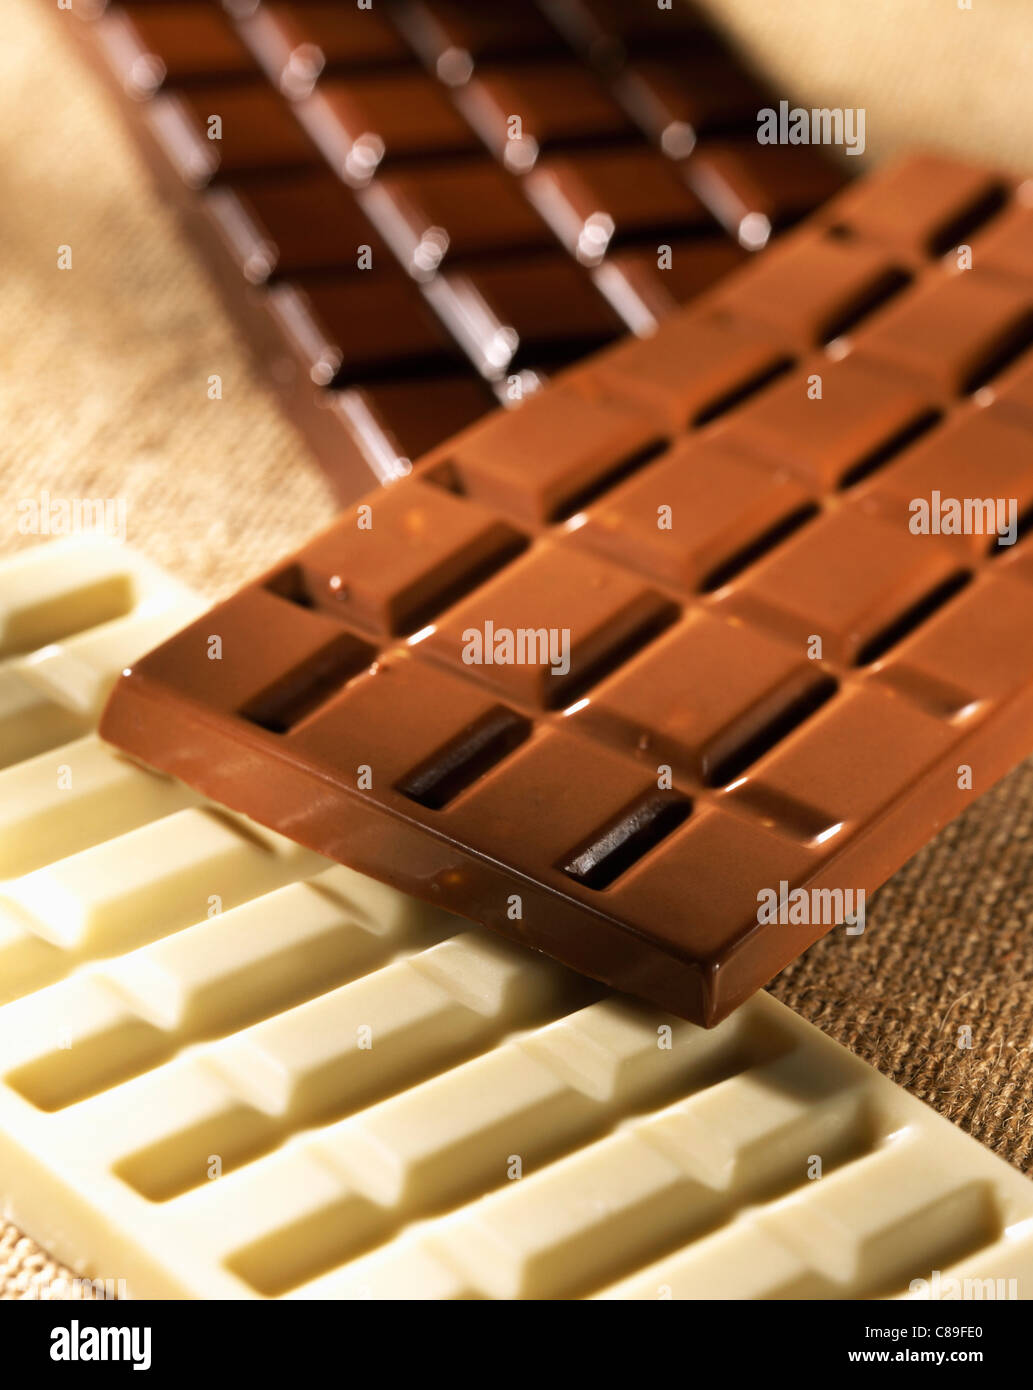 Bars of plain, milk and white chocolate Stock Photo